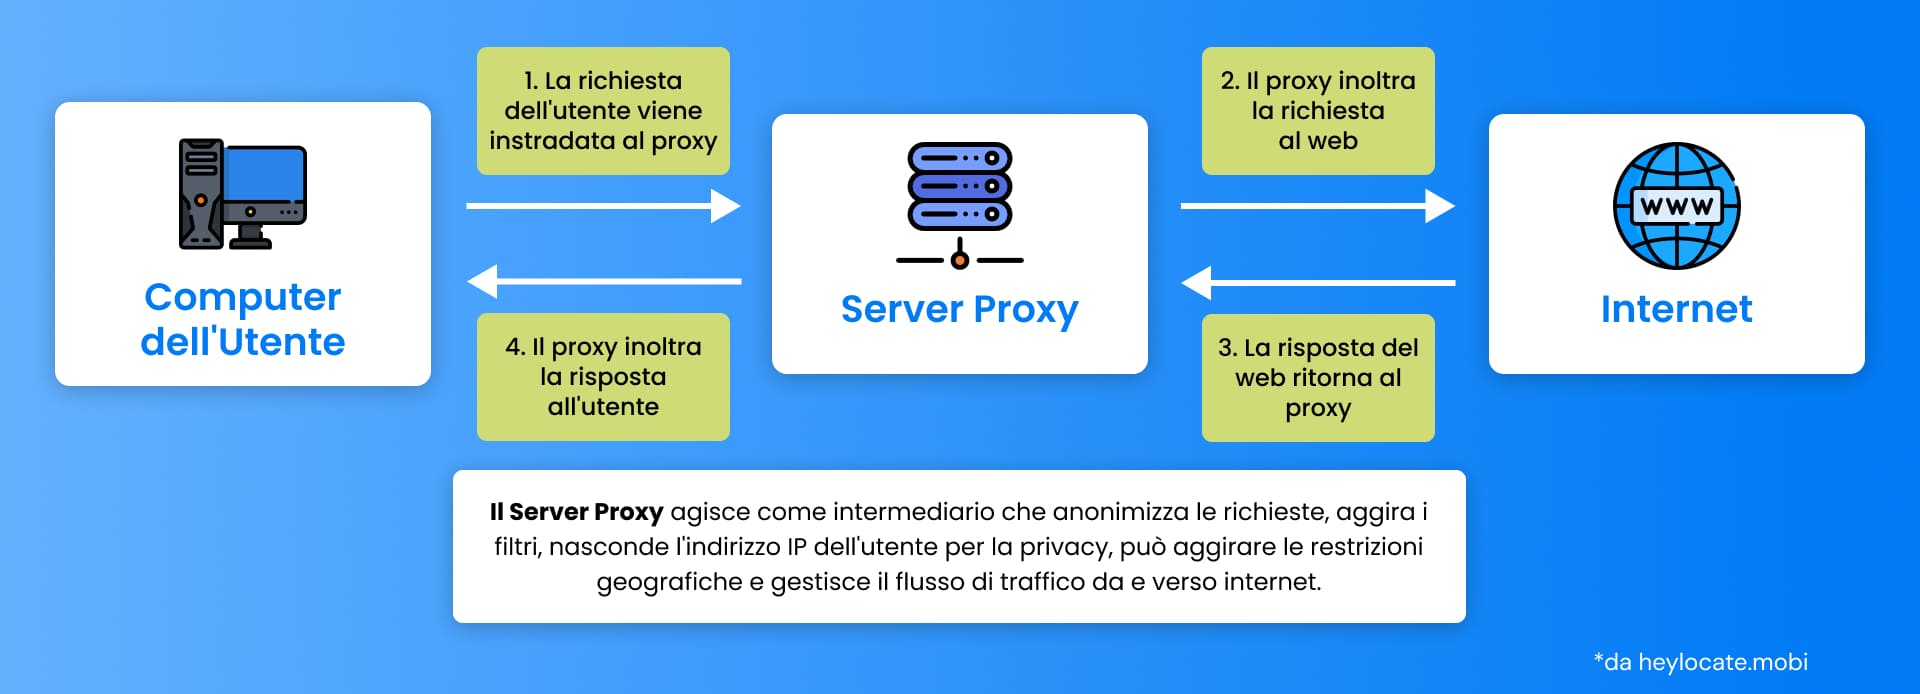 Un diagramma di flusso che illustra il ruolo di un server proxy nell'elaborazione della richiesta di un utente a Internet, descrivendo i passaggi dal computer dell'utente al web e viceversa.